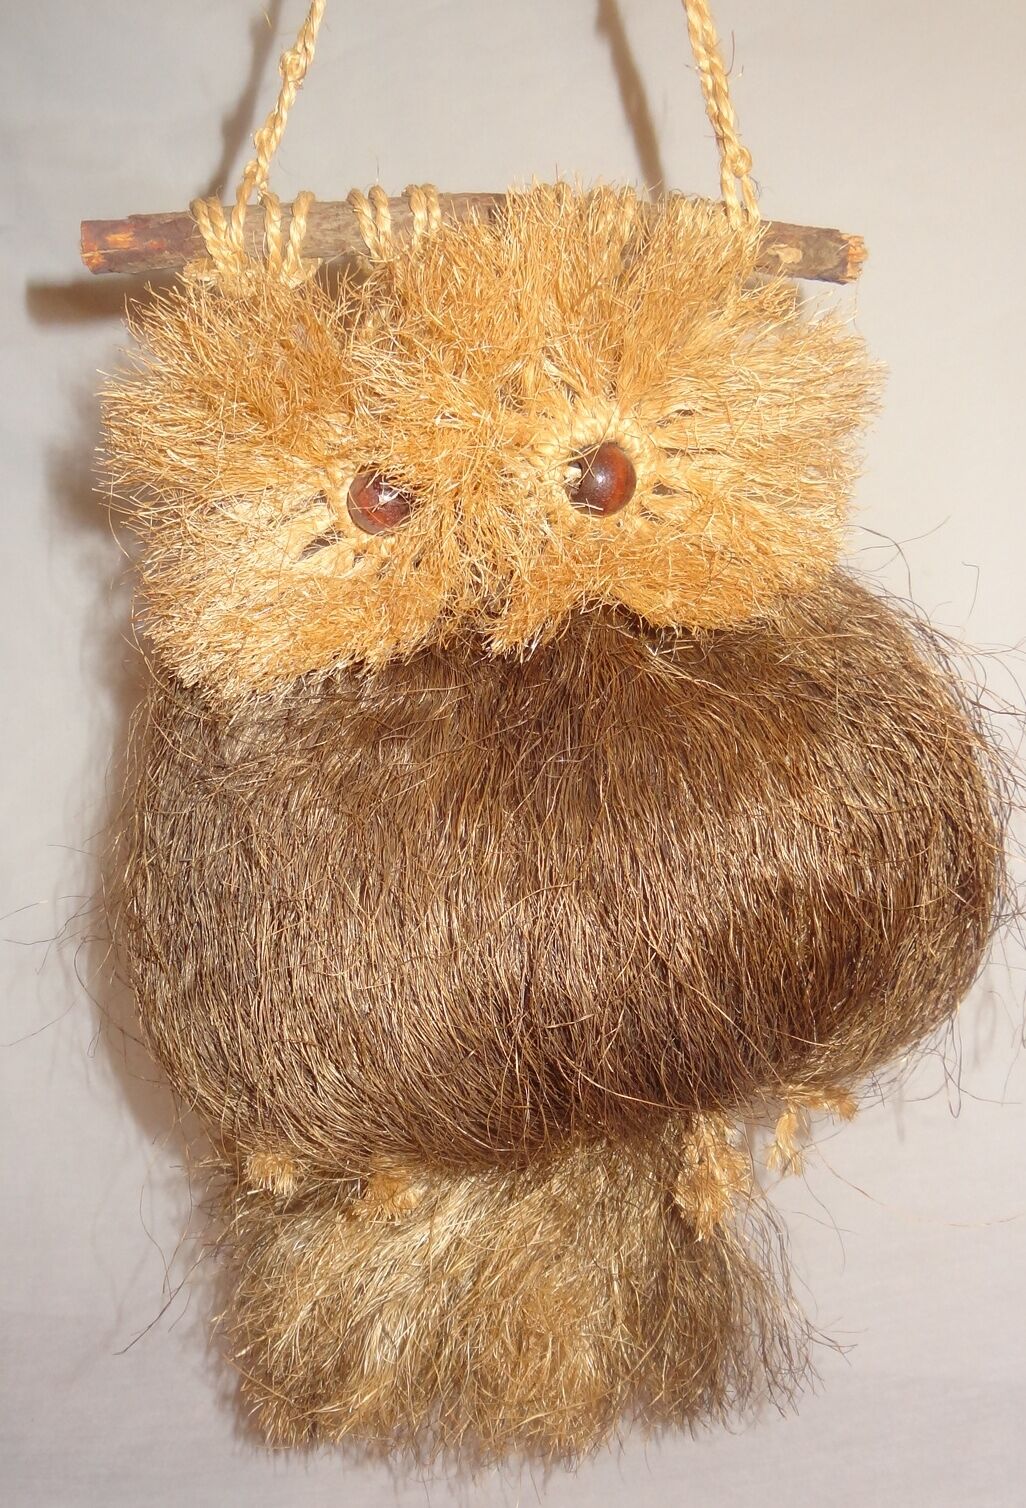 Vintage Owl Macram Coconut Fibers Wall Hanging Brown Handmade...